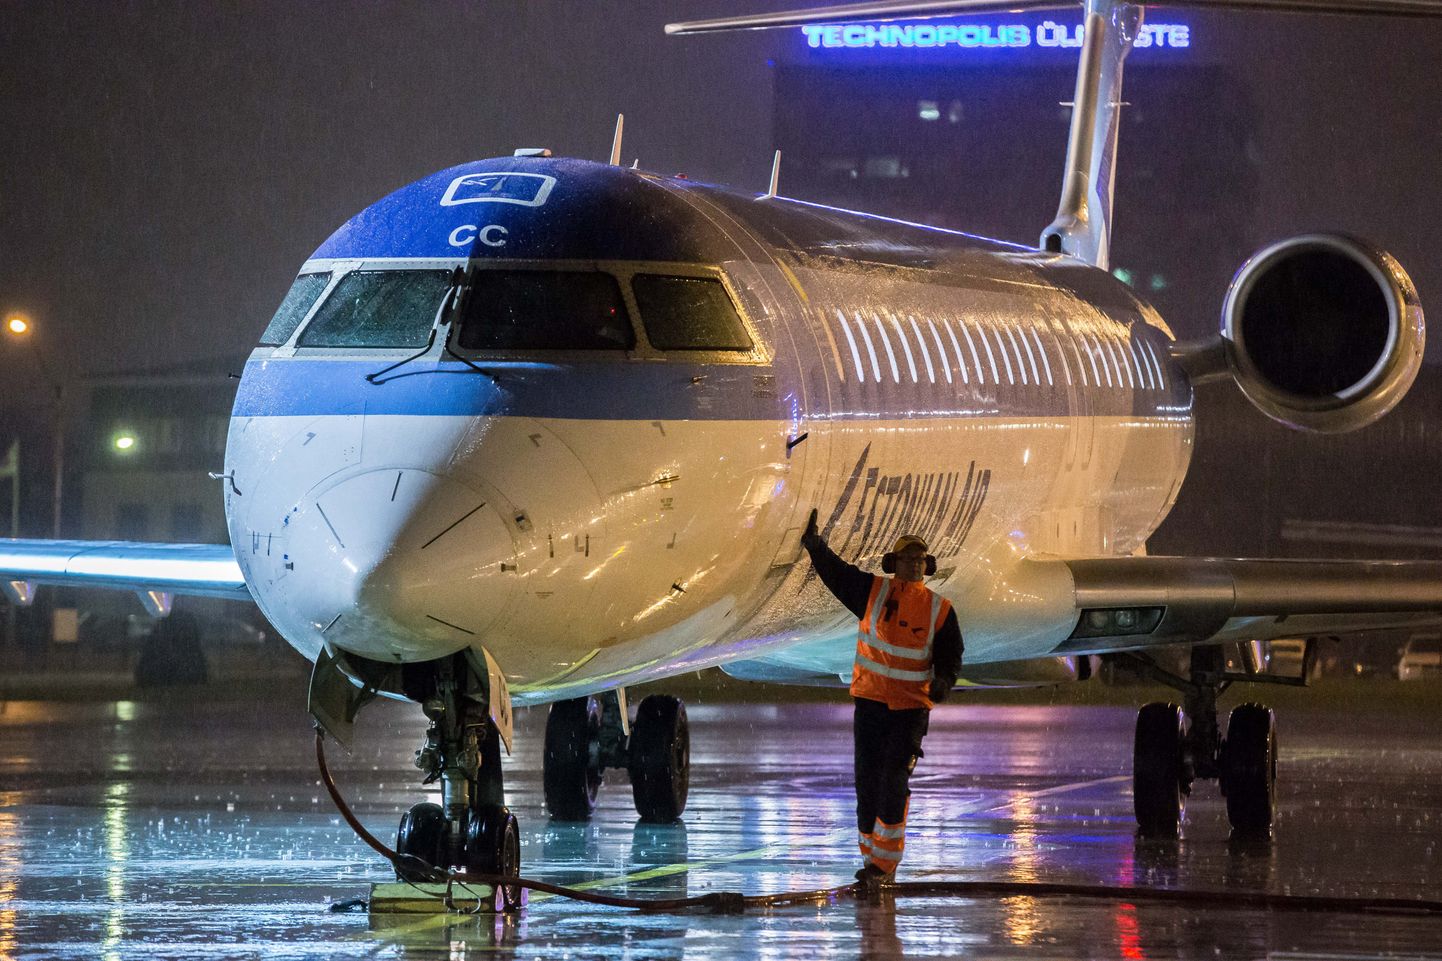 7. novembri õhtul 17.30 paiku saabus Tallinna lennujaama viimane Estonian Airi lend.